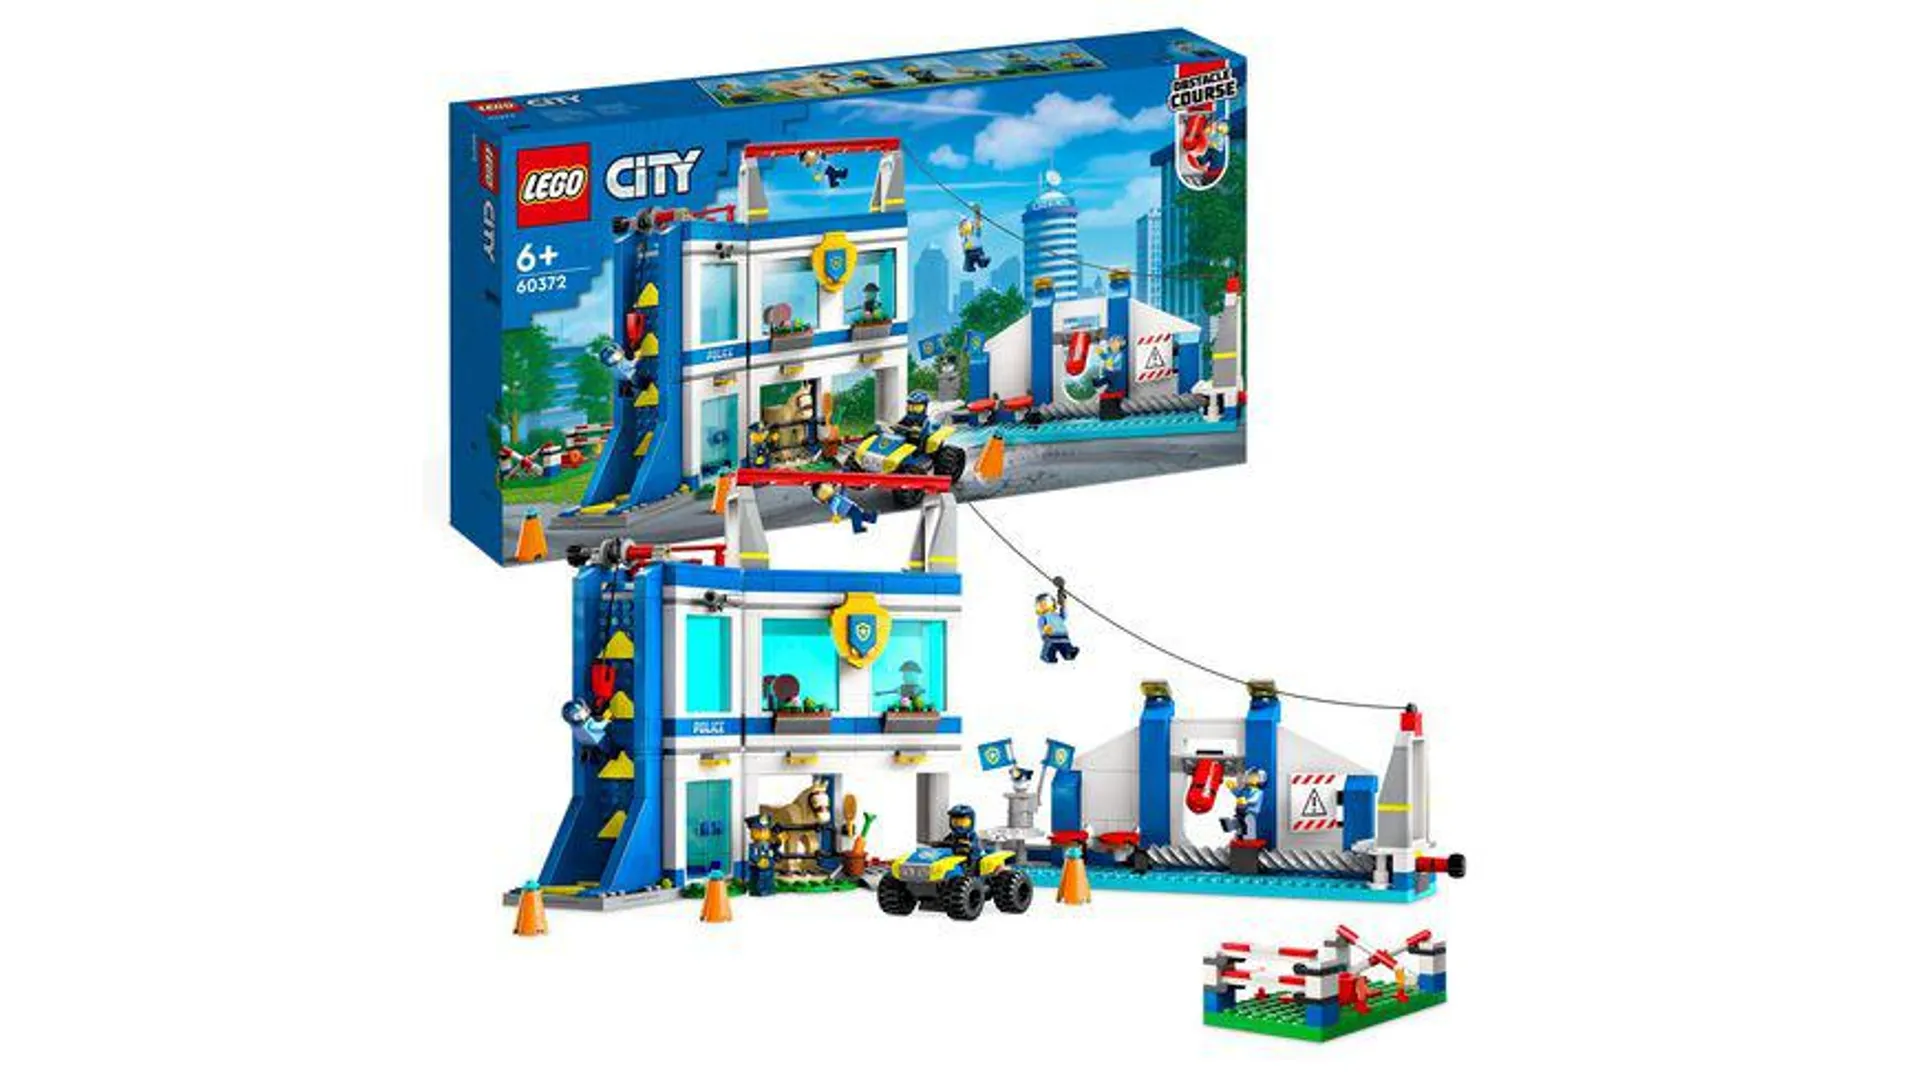 LEGO City 60372 Polizeischule Set mit Pferd und Hindernisstrecke